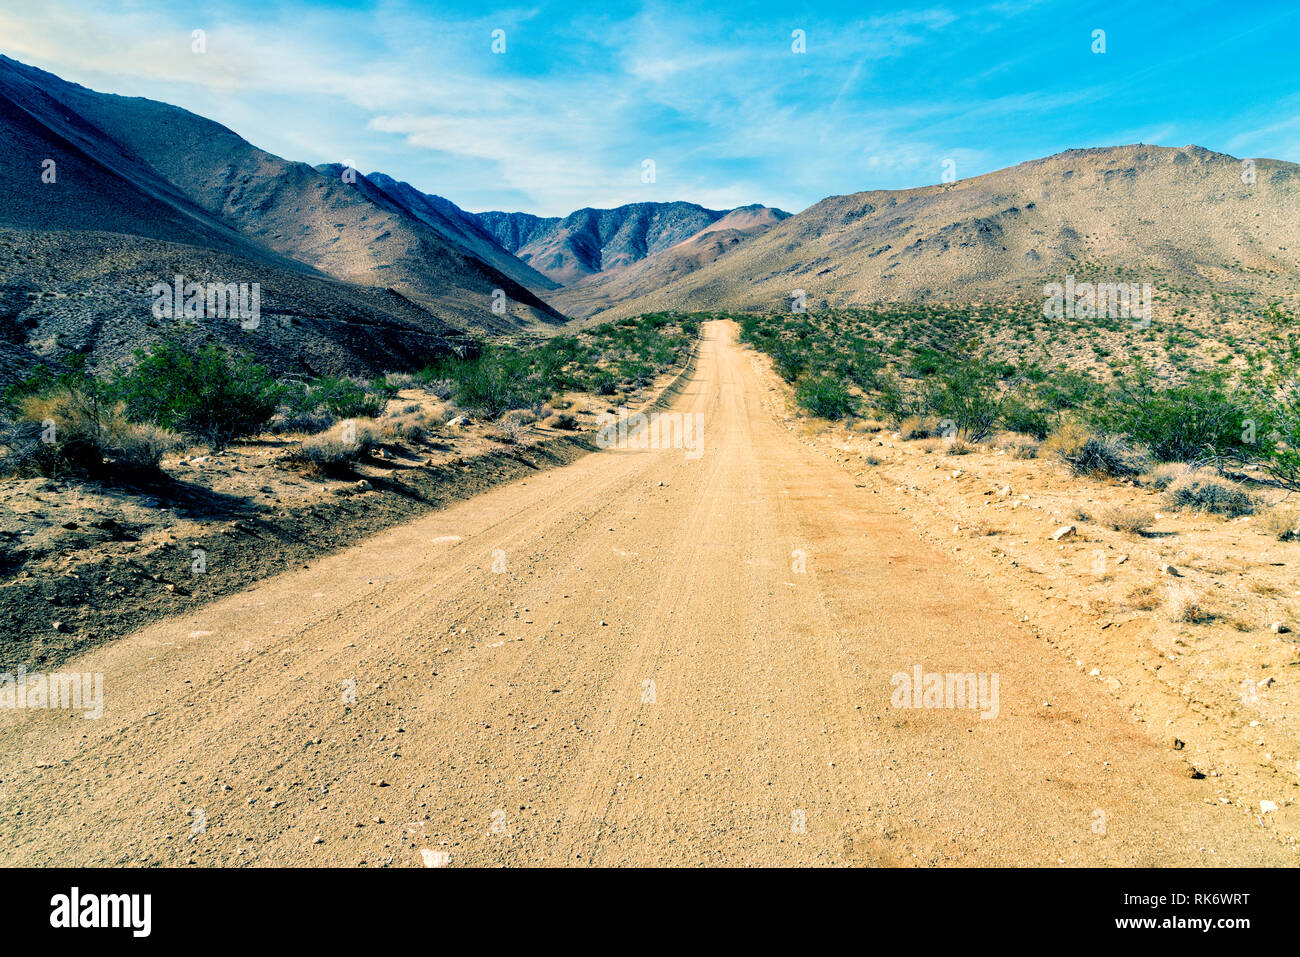 Le désert aride à la route de terre qui mène dans des montagnes du désert au-delà sous ciel bleu. Banque D'Images